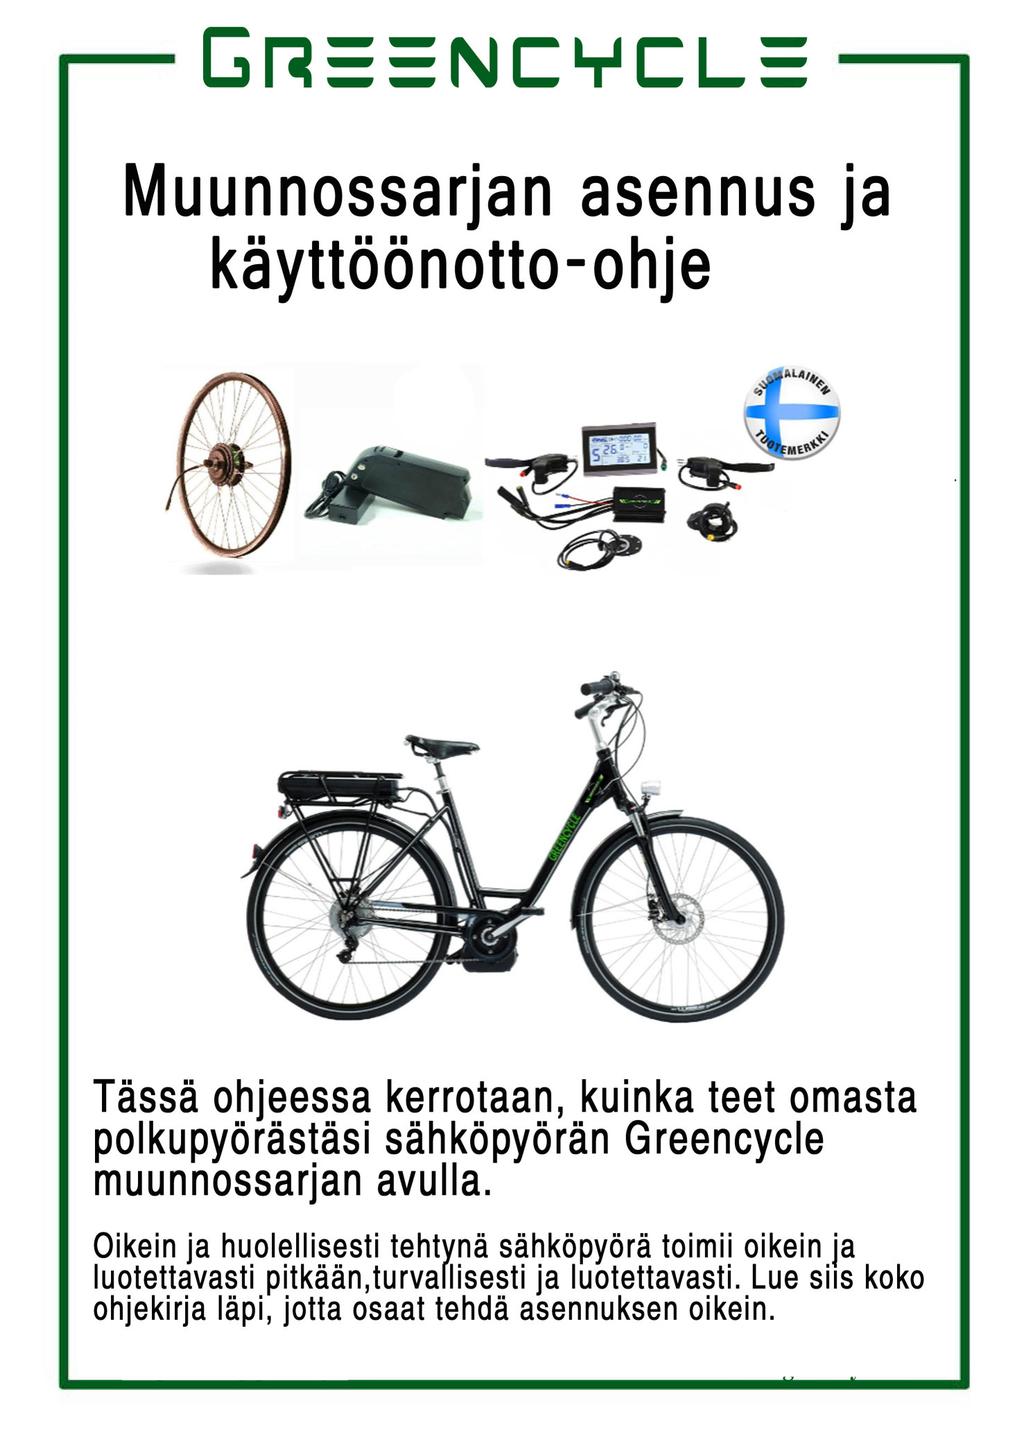 Muunnossarjan asennus ja käyttöönotto-ohje l Tässä ohjeessa kerrotaan, kuinka teet omasta polkupyörästäsi sähköpyörän Greencycle muunnossarjan avulla.